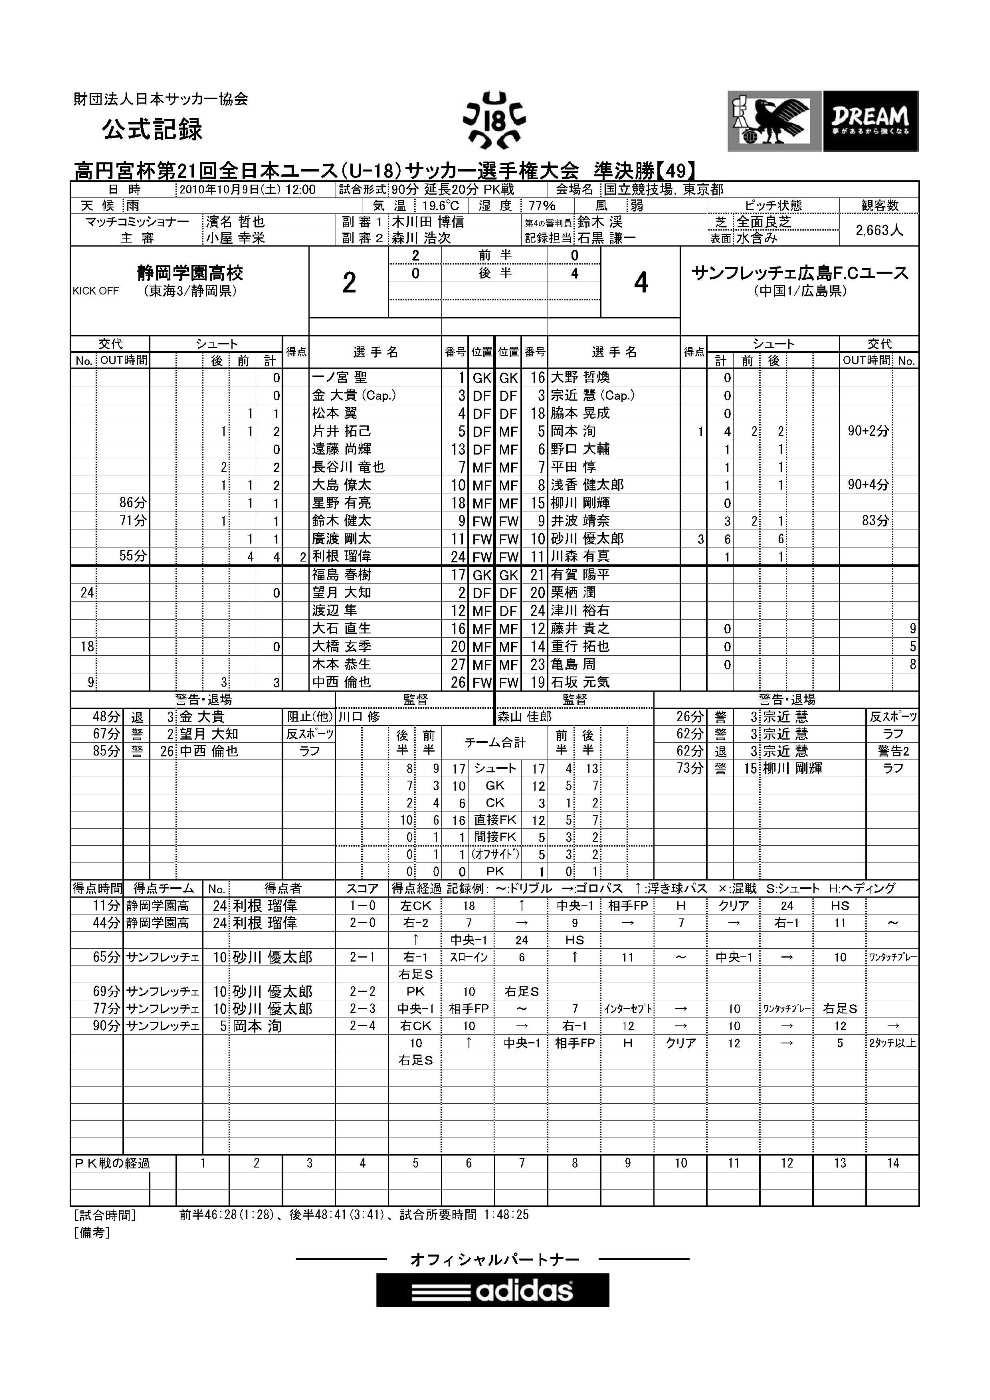 全日本ユース広島戦公式記録 谷田虎の穴3 倉庫